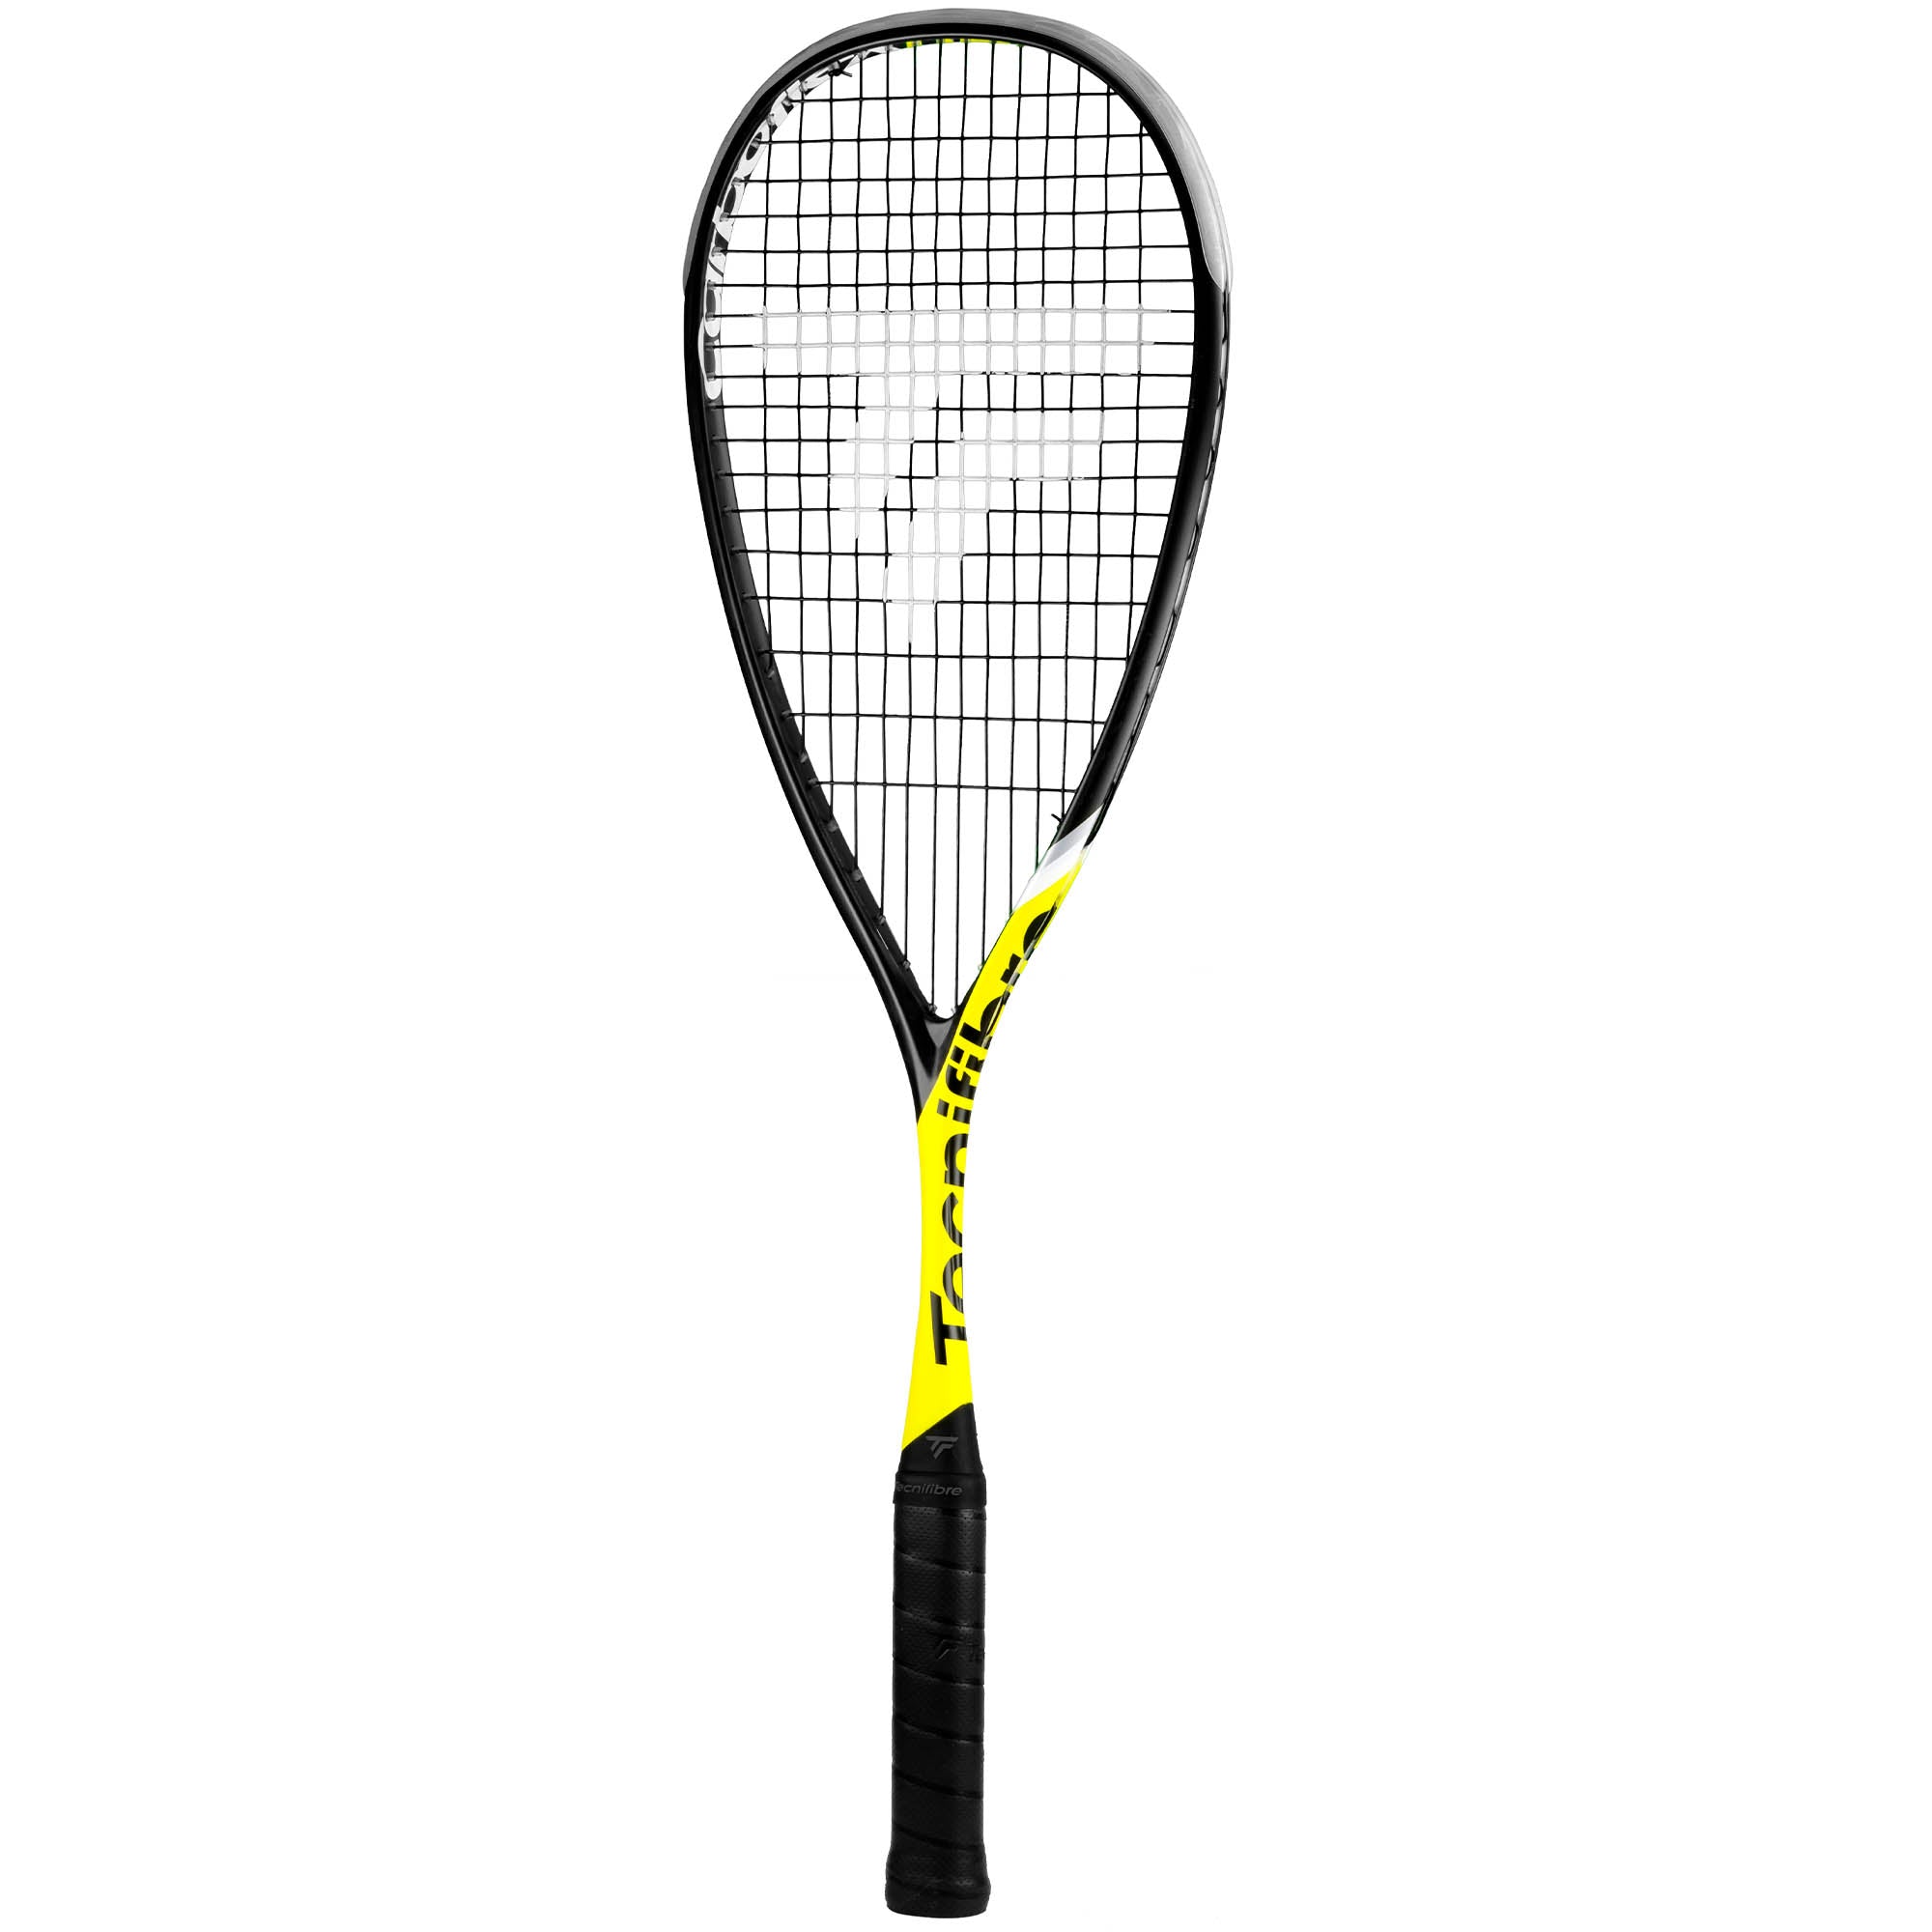 Tecnifibre Heritage II Squash Racket